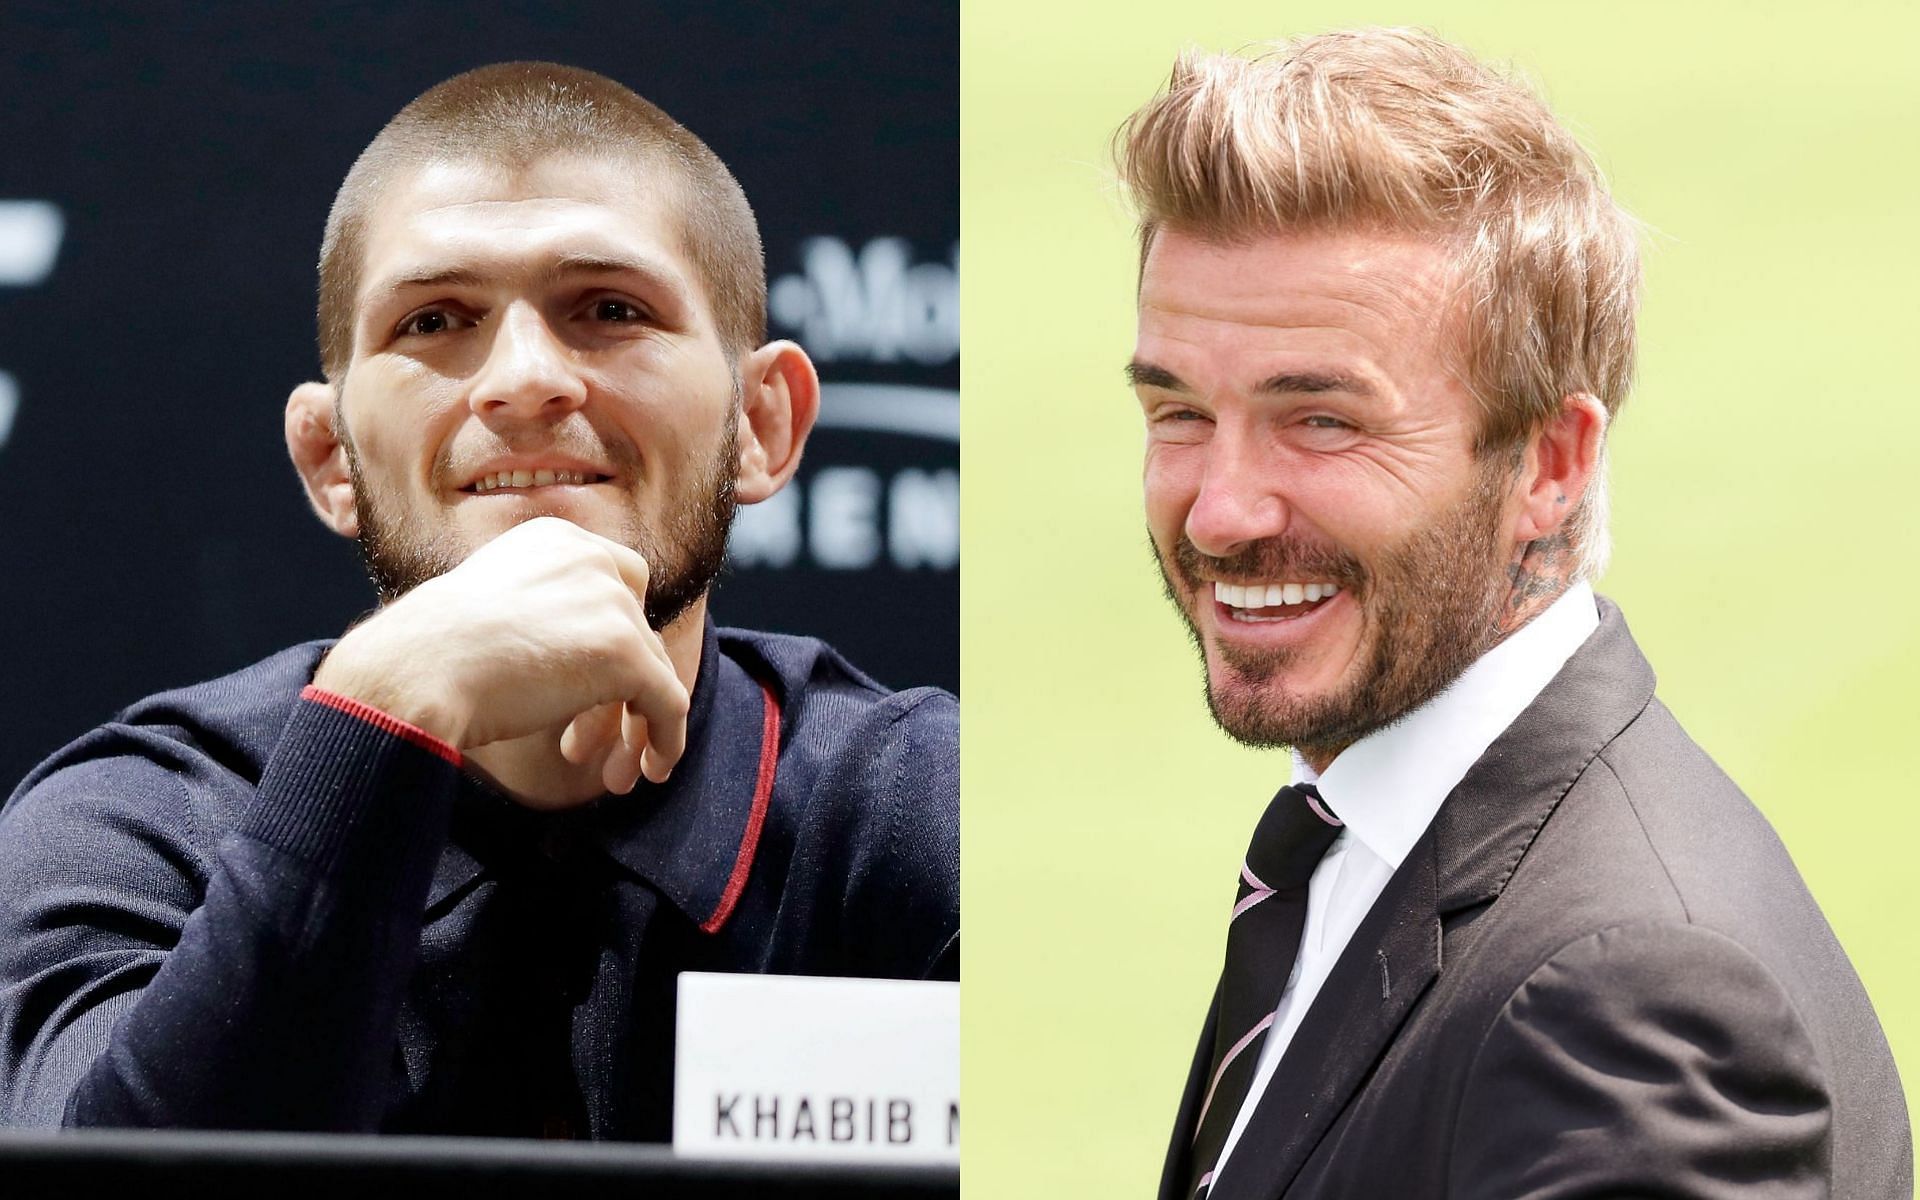 Khabib Nurmagomedov (left) and David Beckham (right)